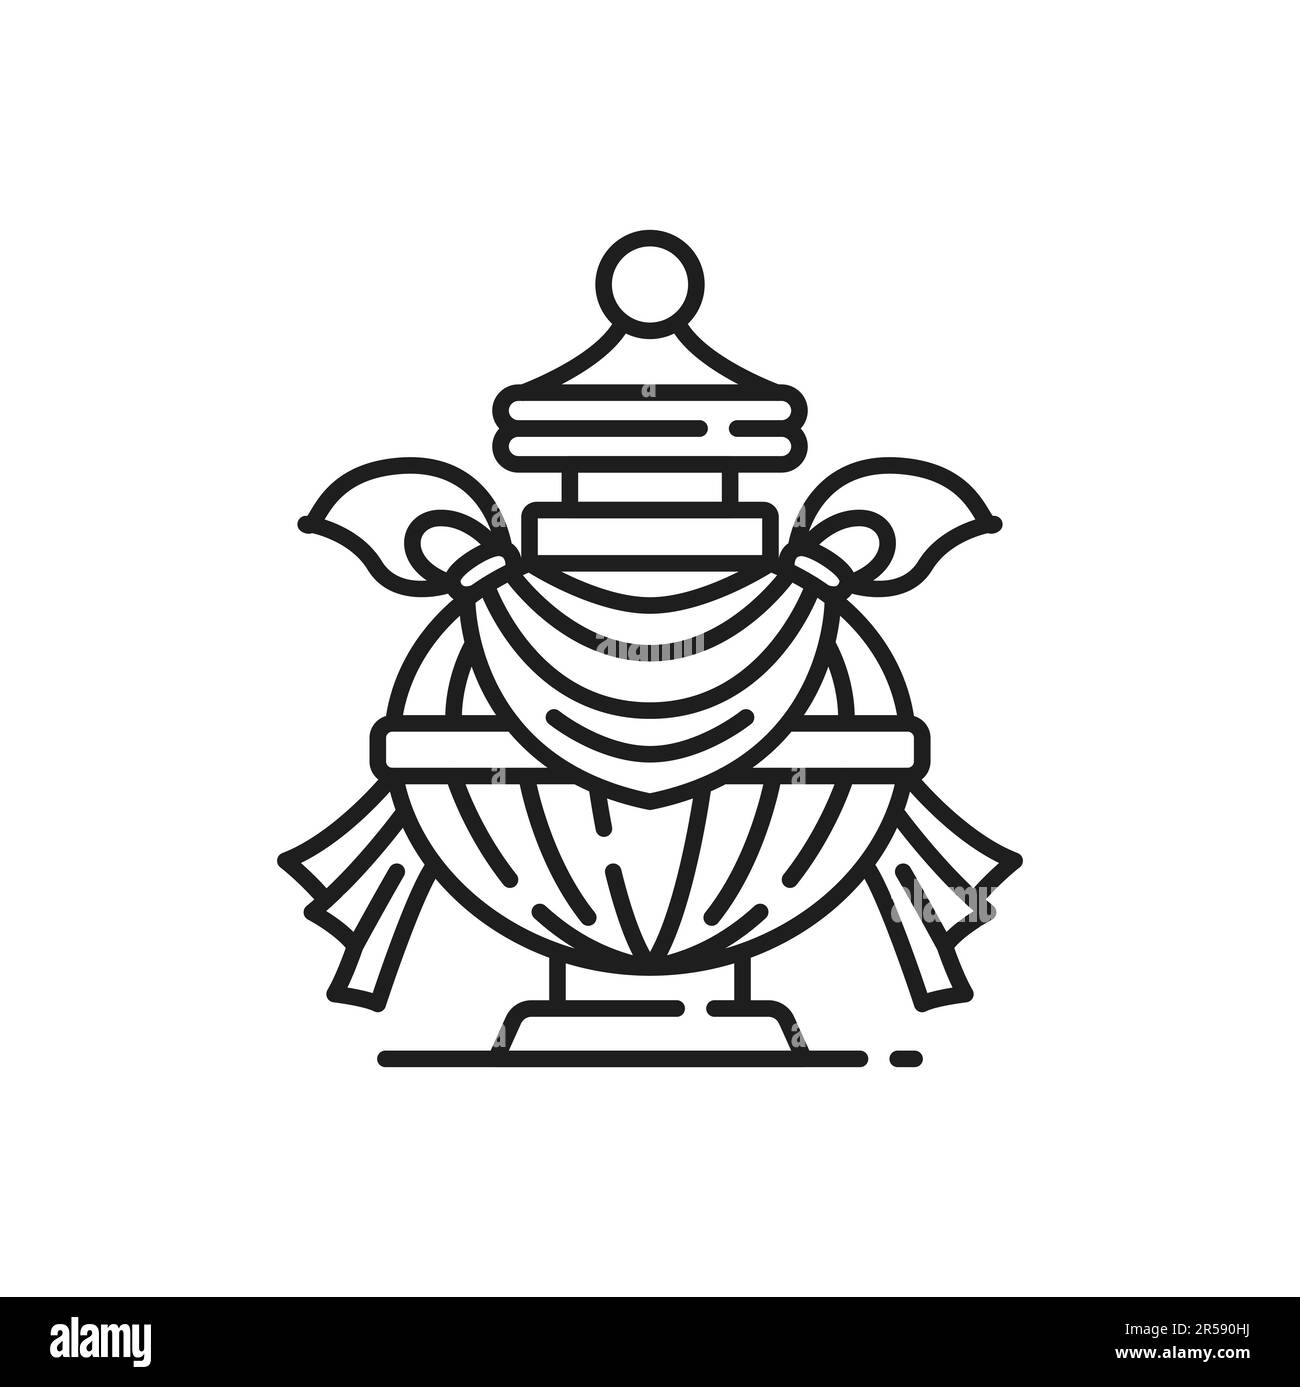 Symbole du bouddhisme de vase Bumpa, icône du vecteur religieux bouddhiste. Bouddhisme tibétain huit signe de la présence d'un vase Kumbha sacré de l'hindouisme, Bouddha ou A. Illustration de Vecteur